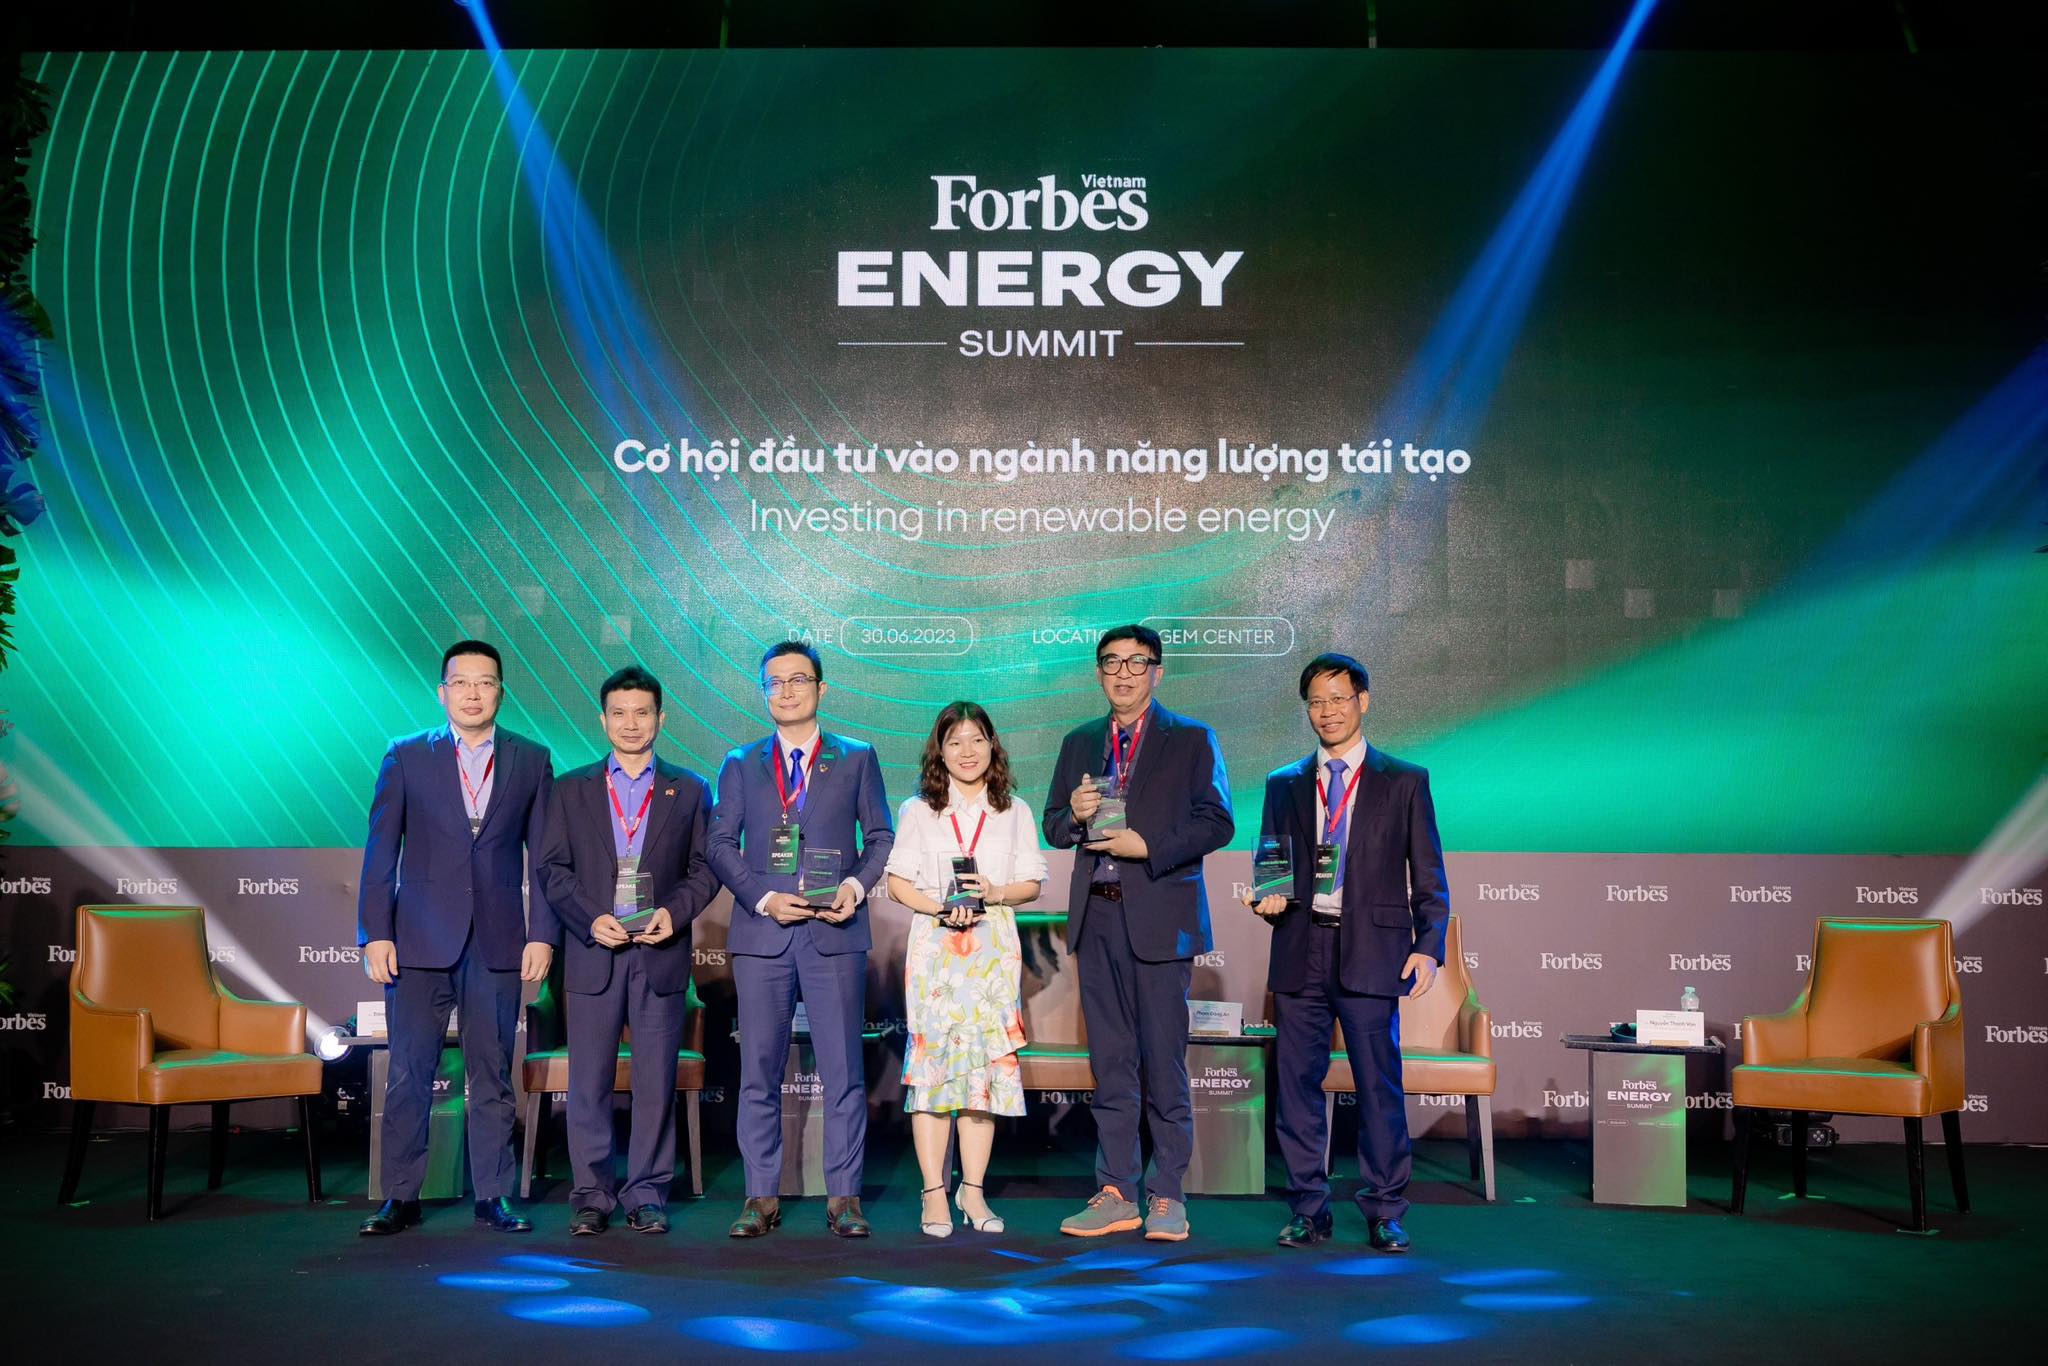 Mon Amie chân thành cám ơn feedback từ Mr. Phạm Đăng An, Phó Tổng Giám đốc Vũ Phong Energy Group.